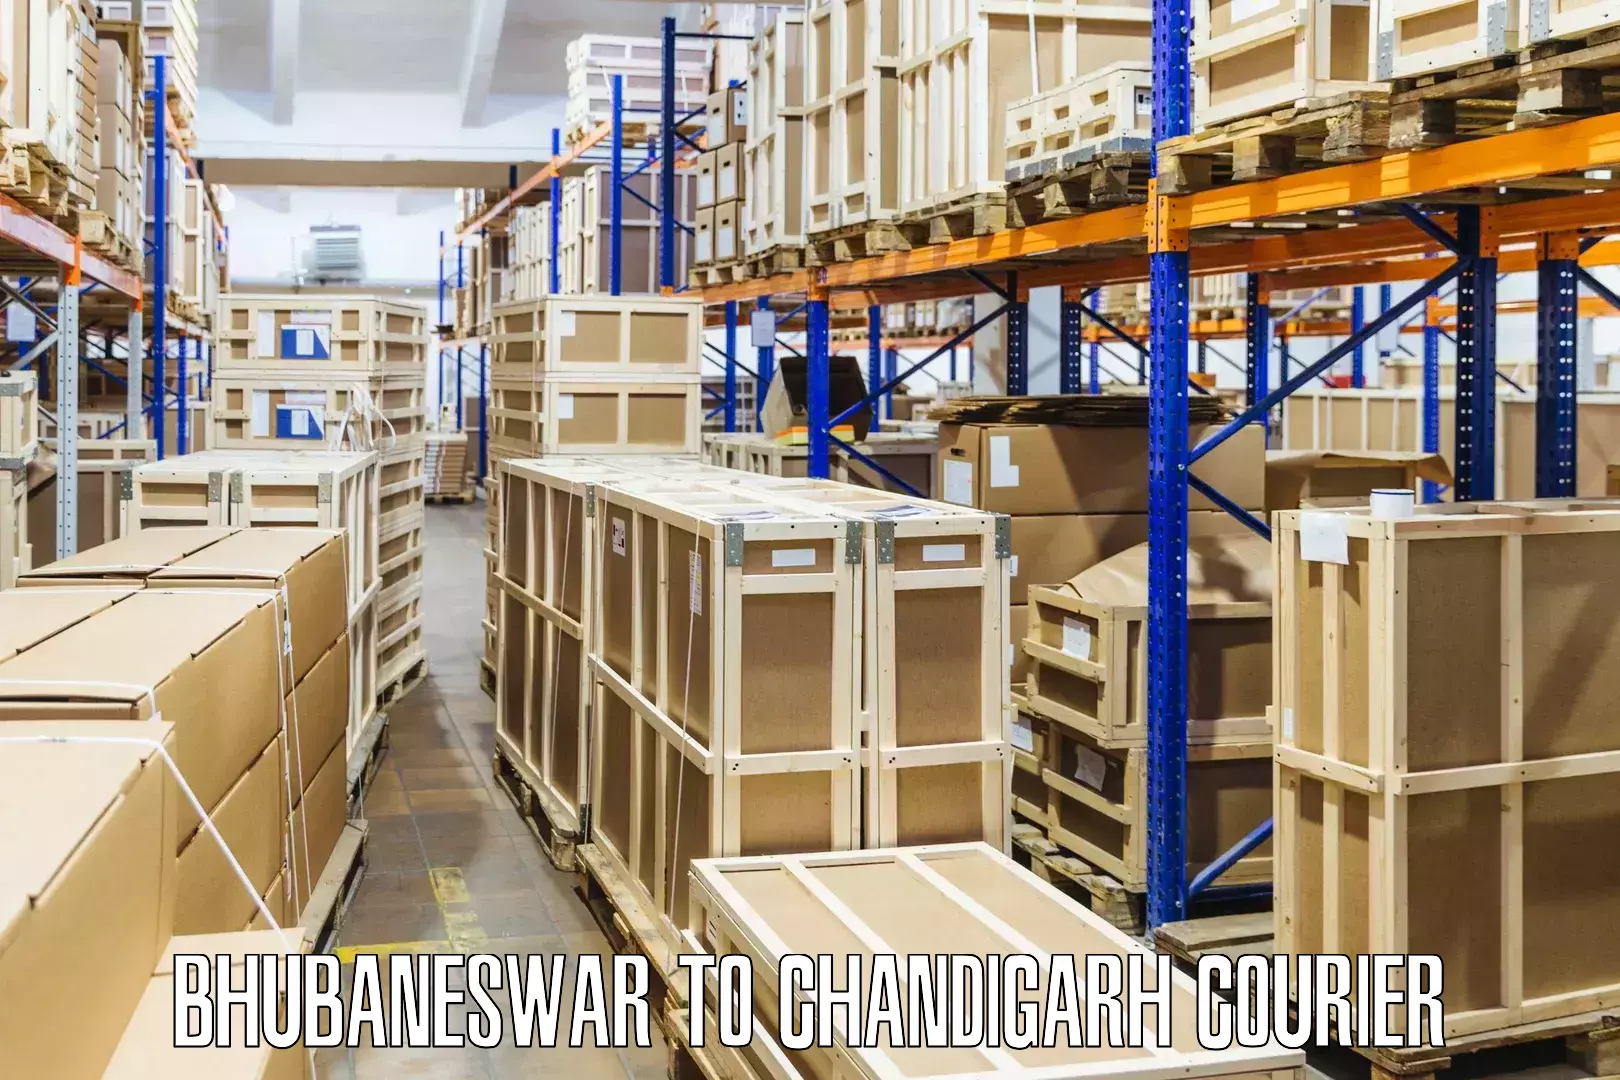 High-capacity shipping options Bhubaneswar to Chandigarh